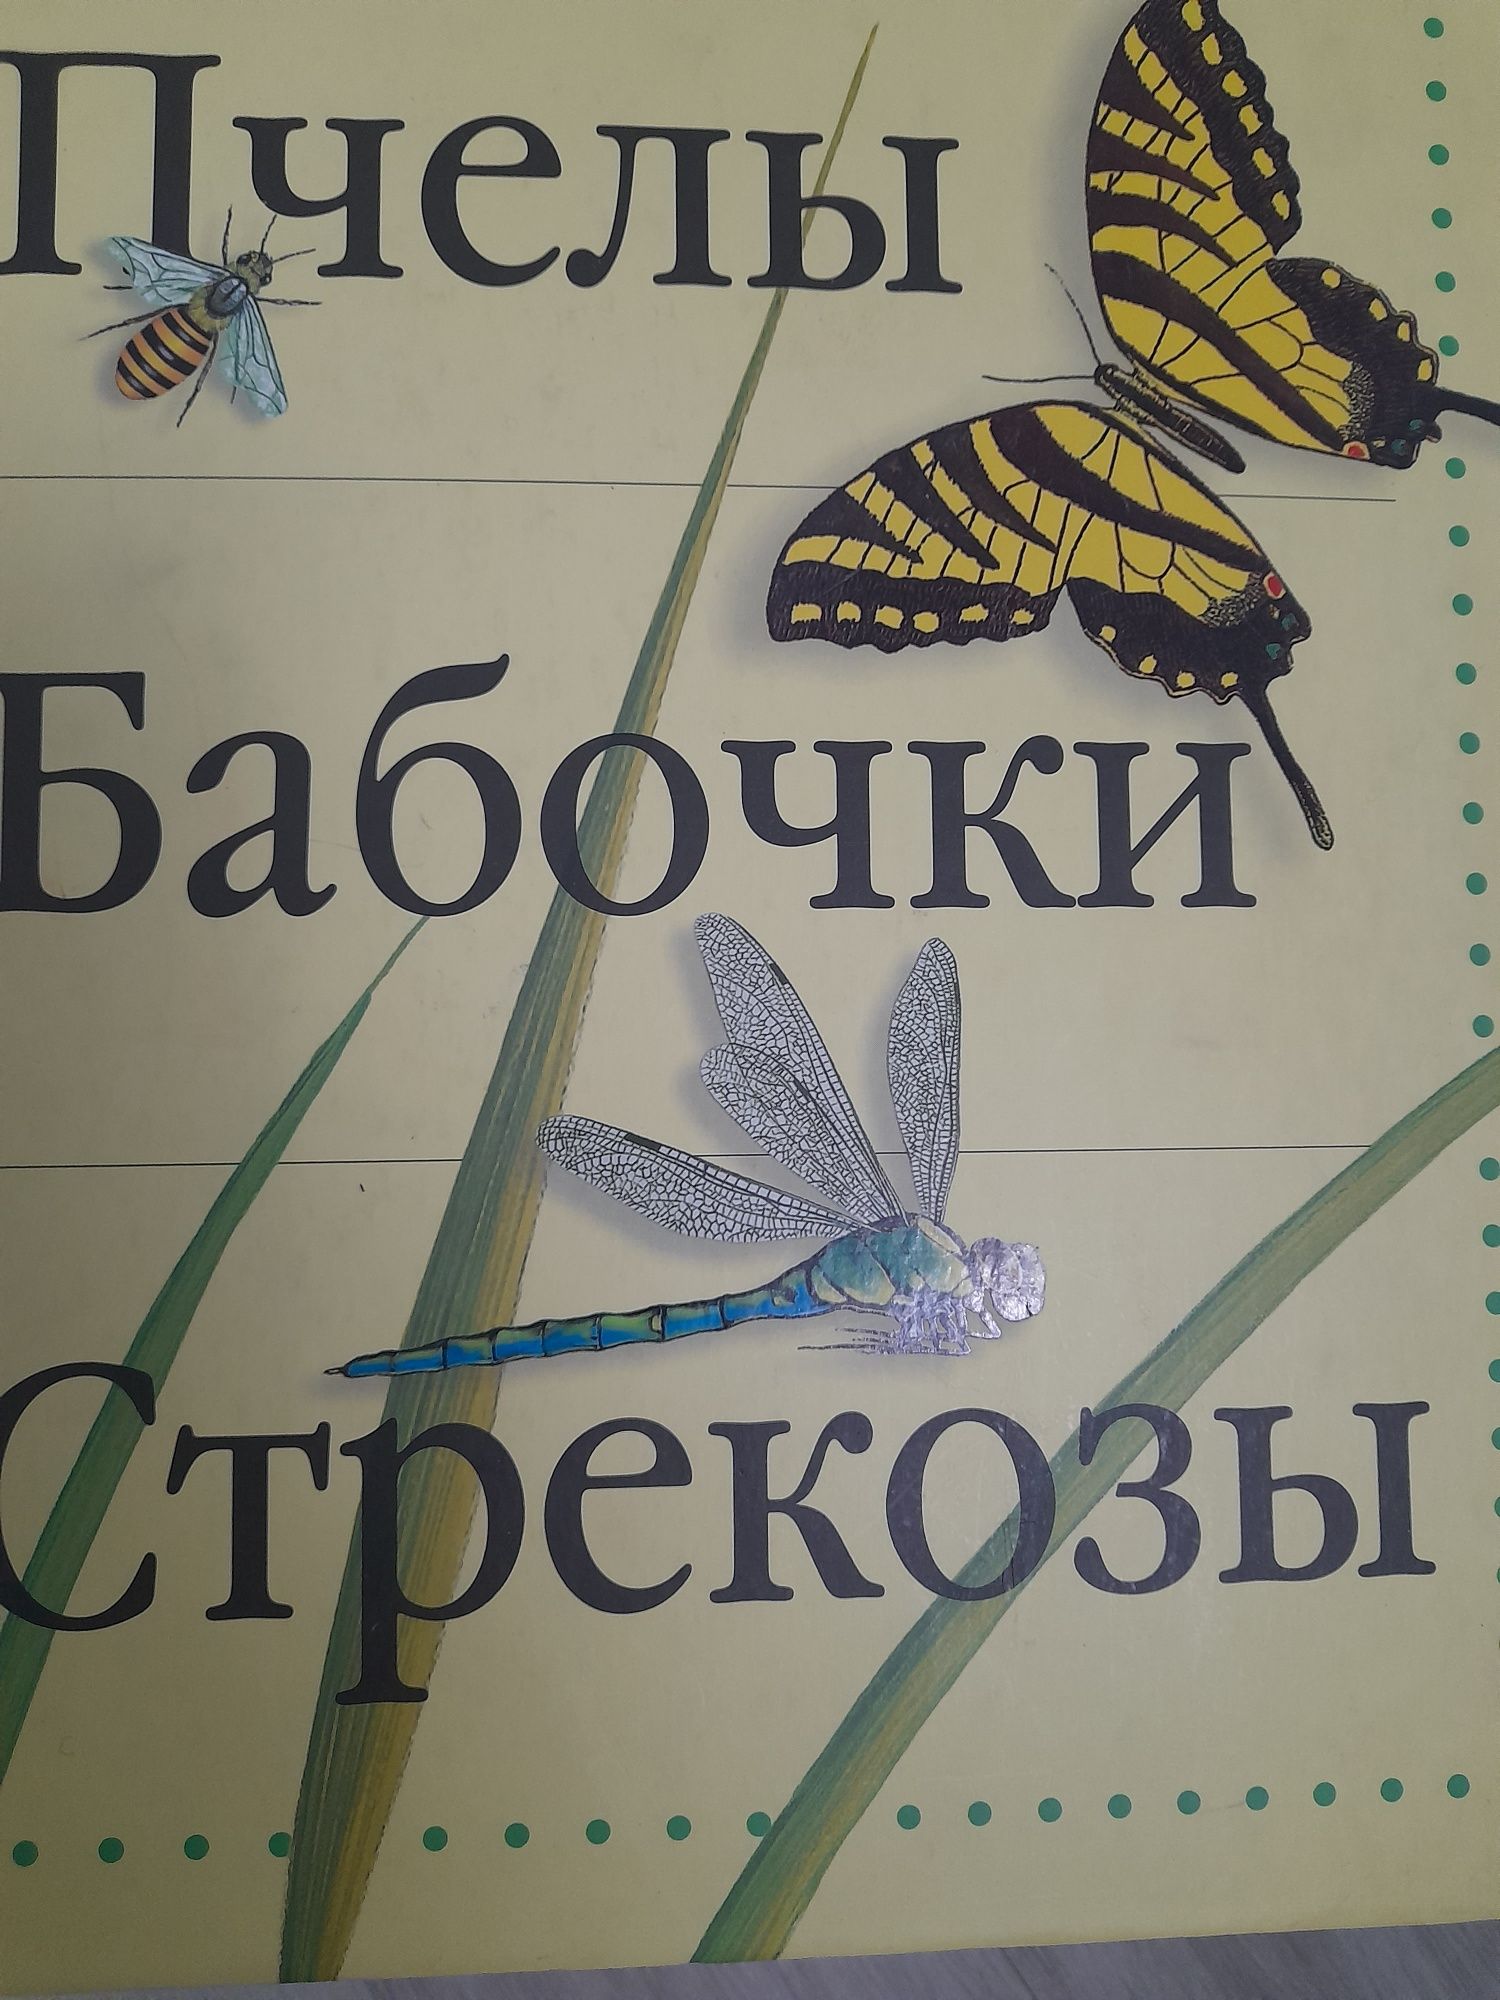 Новая книга Пчелы,бабочки стрекозы  цена 60гр